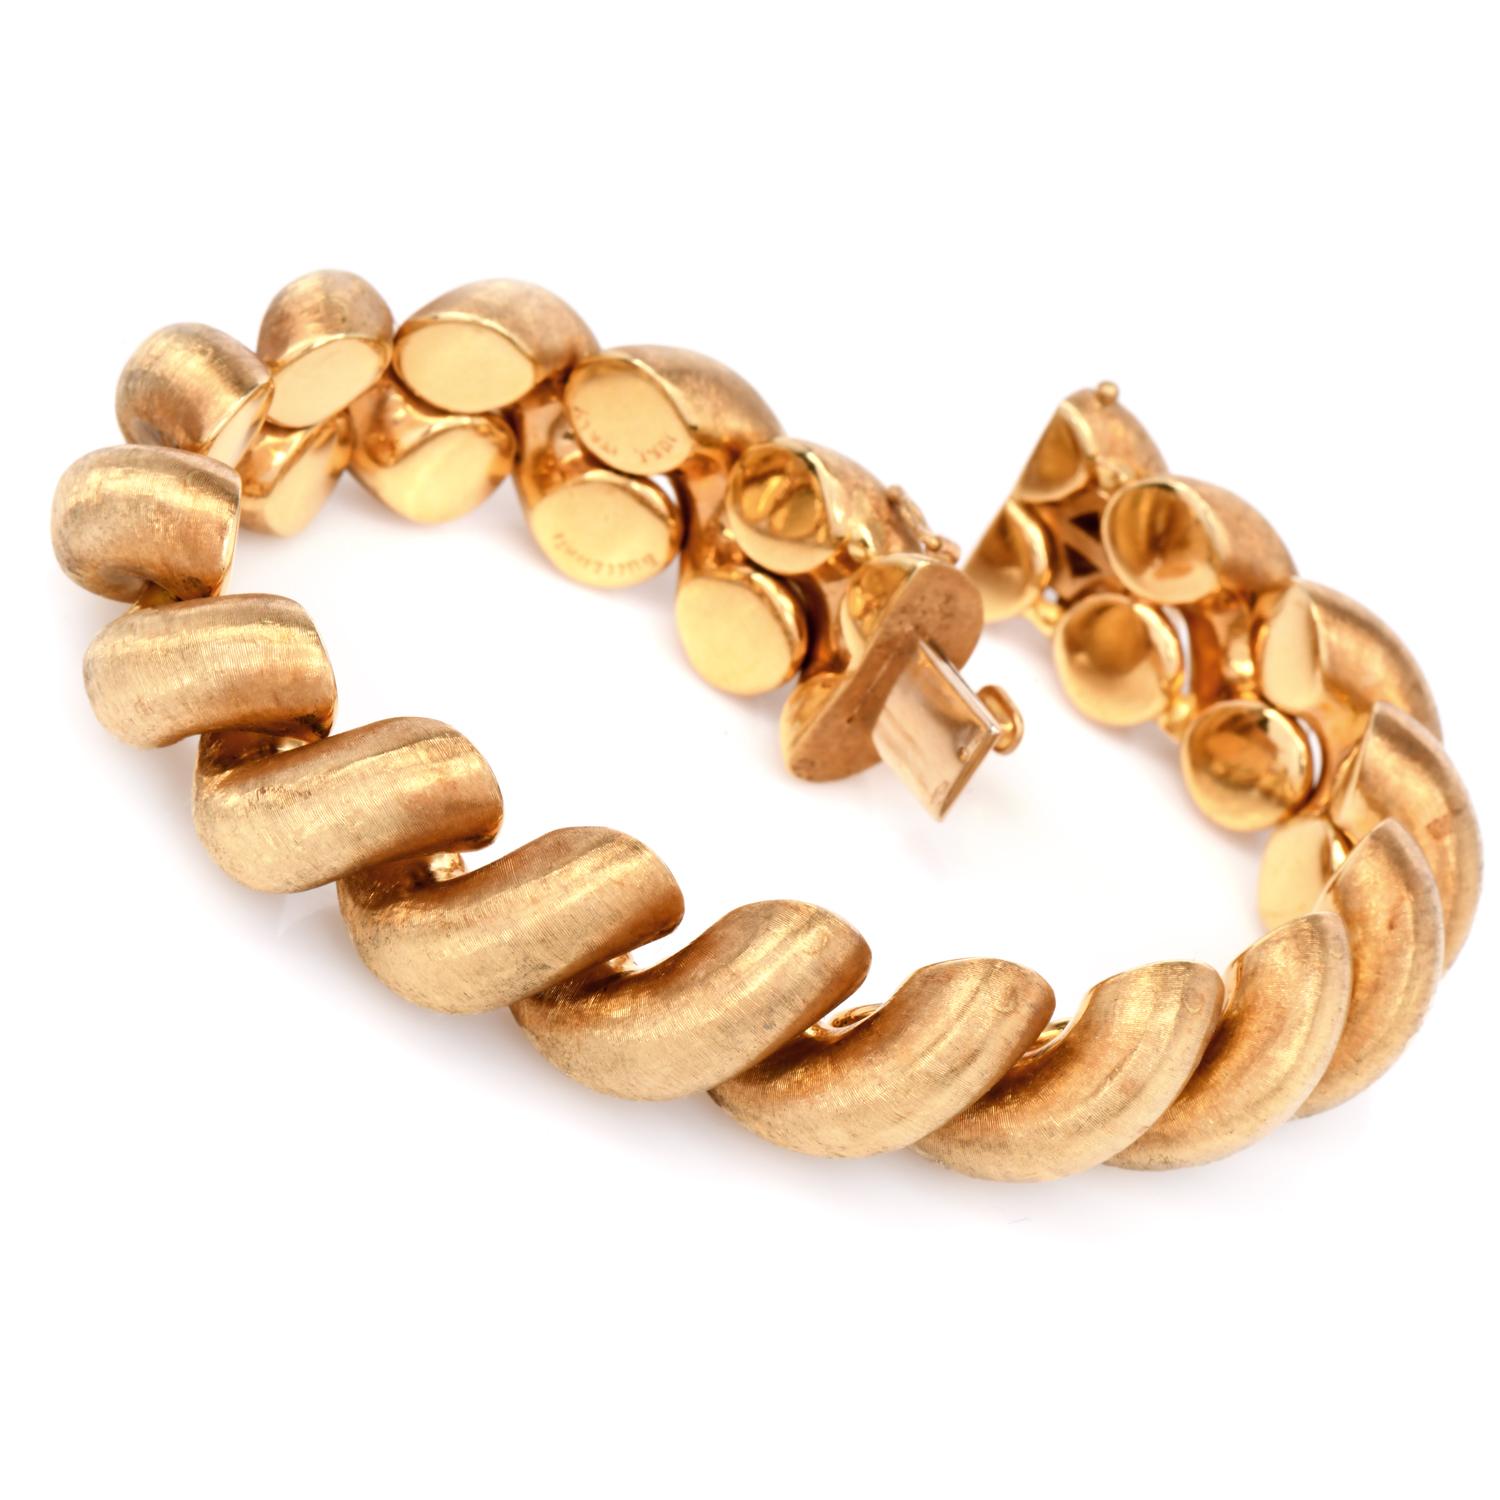 Ce bracelet Buccellati est indispensable. Buccellati est célèbre pour ses bijoux à la texture exquise et pour la qualité de son travail. Il est fabriqué à la main selon les techniques traditionnelles de Buccellati Rigato avec une finition satinée en